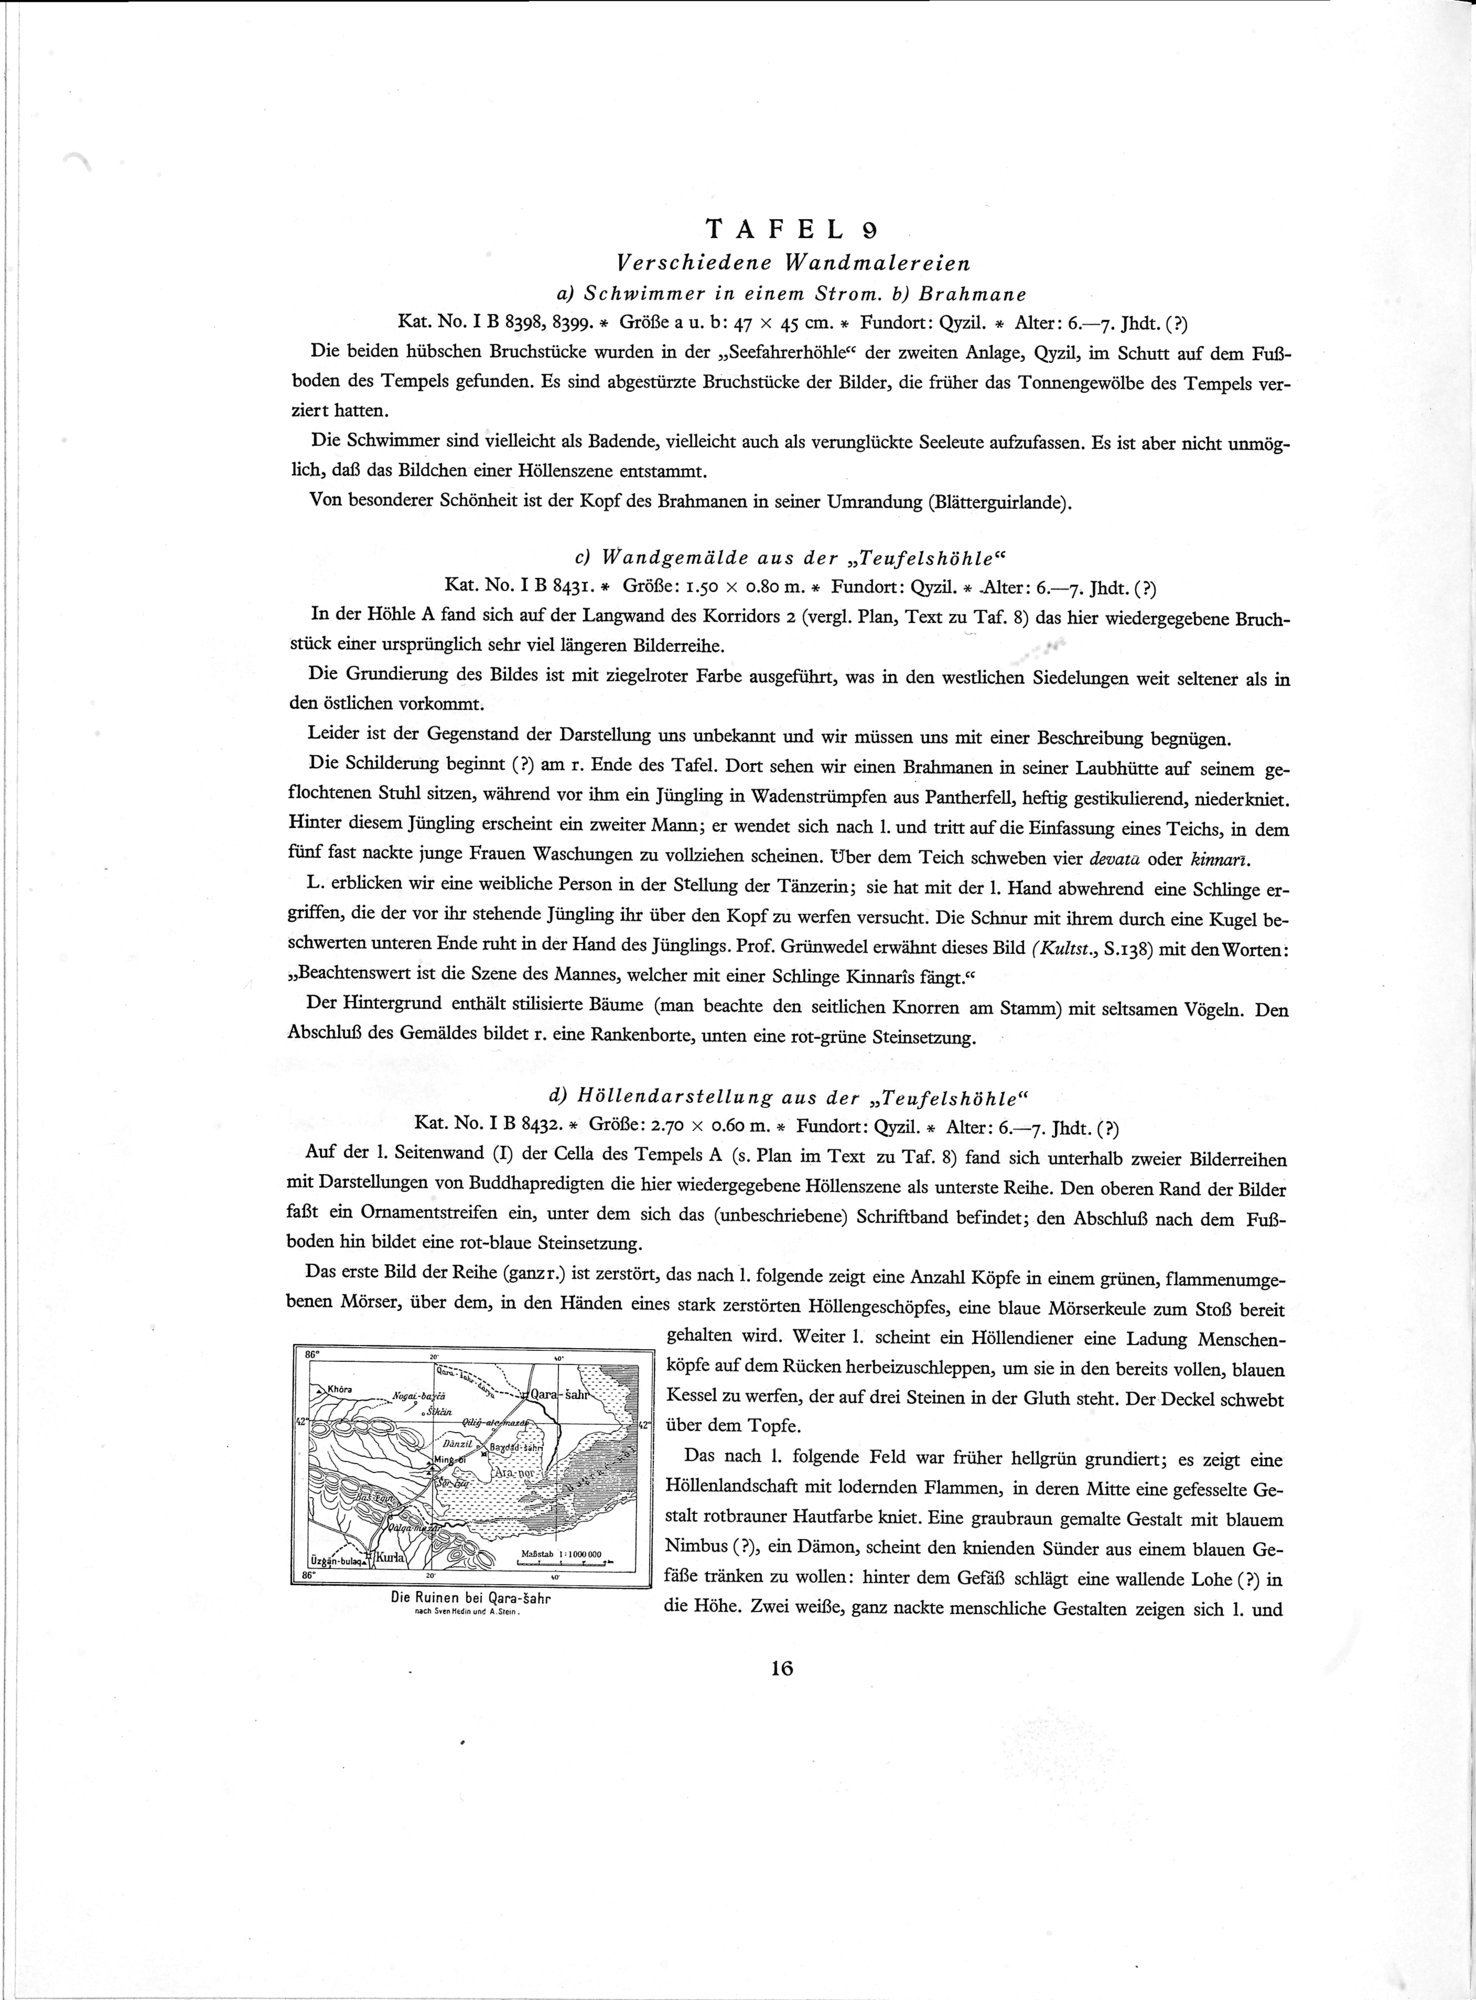 Die Buddhistische Spätantike in Mittelasien : vol.4 / Page 50 (Grayscale High Resolution Image)